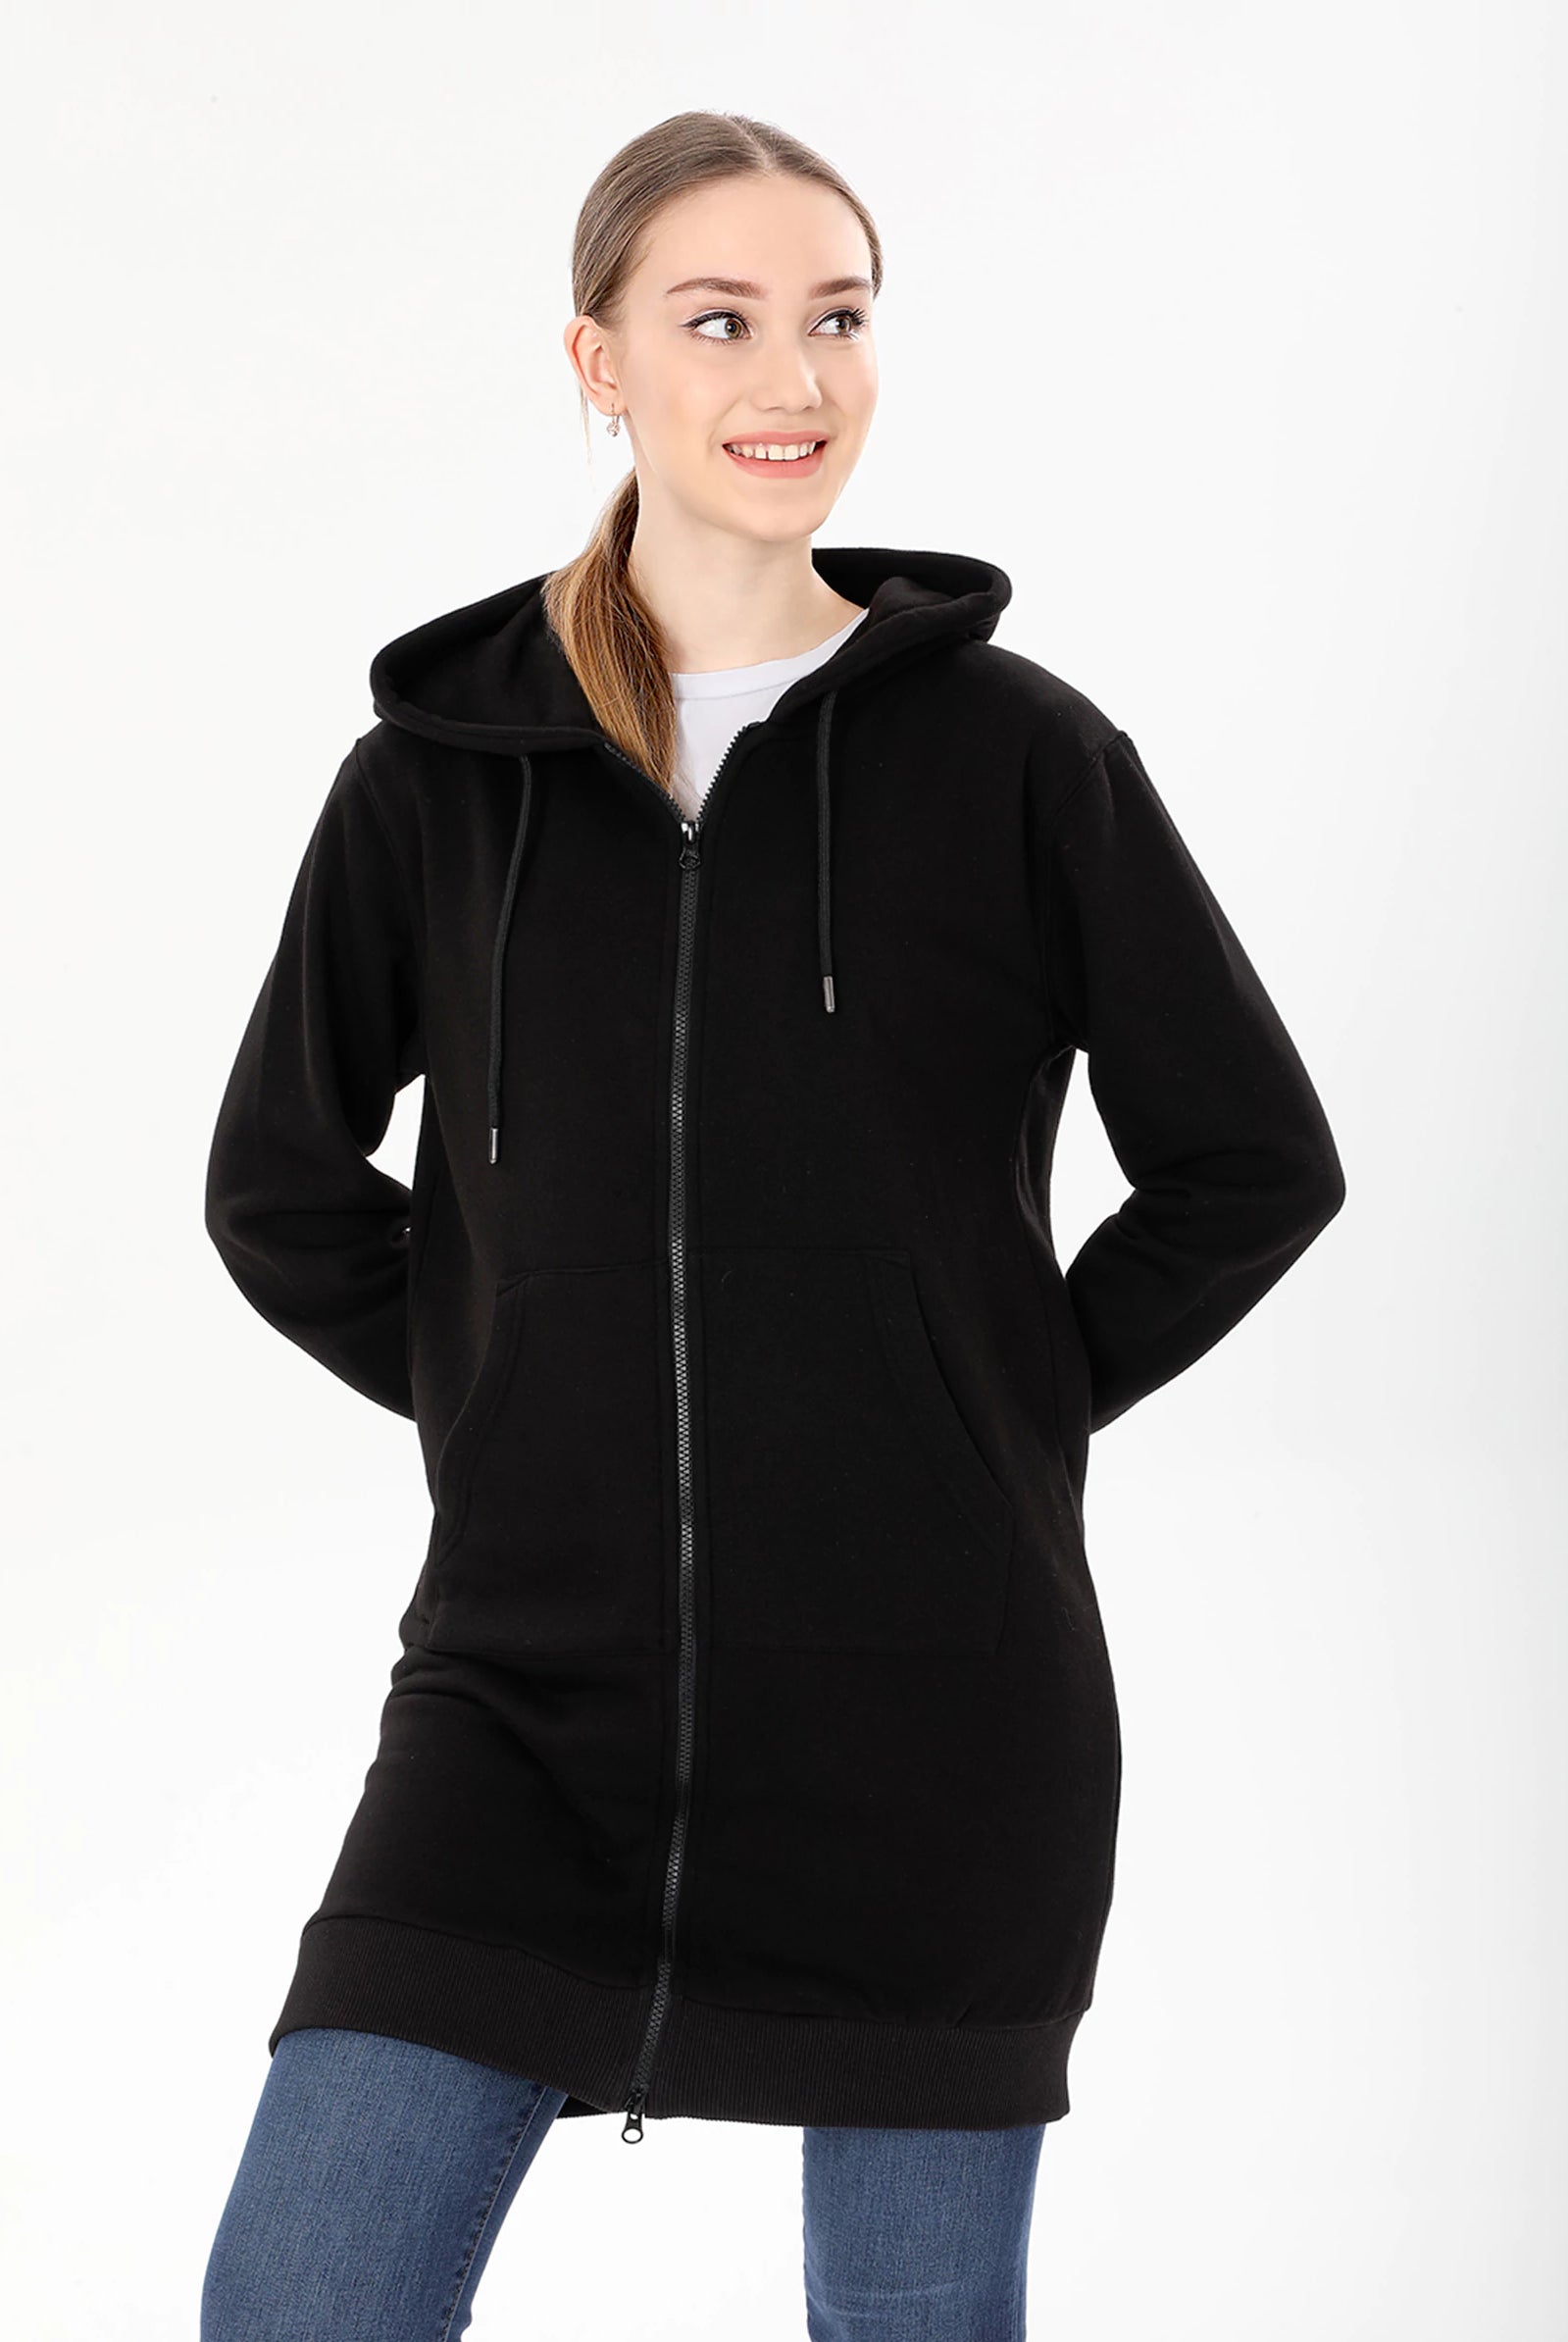 black zip up hoodie women's